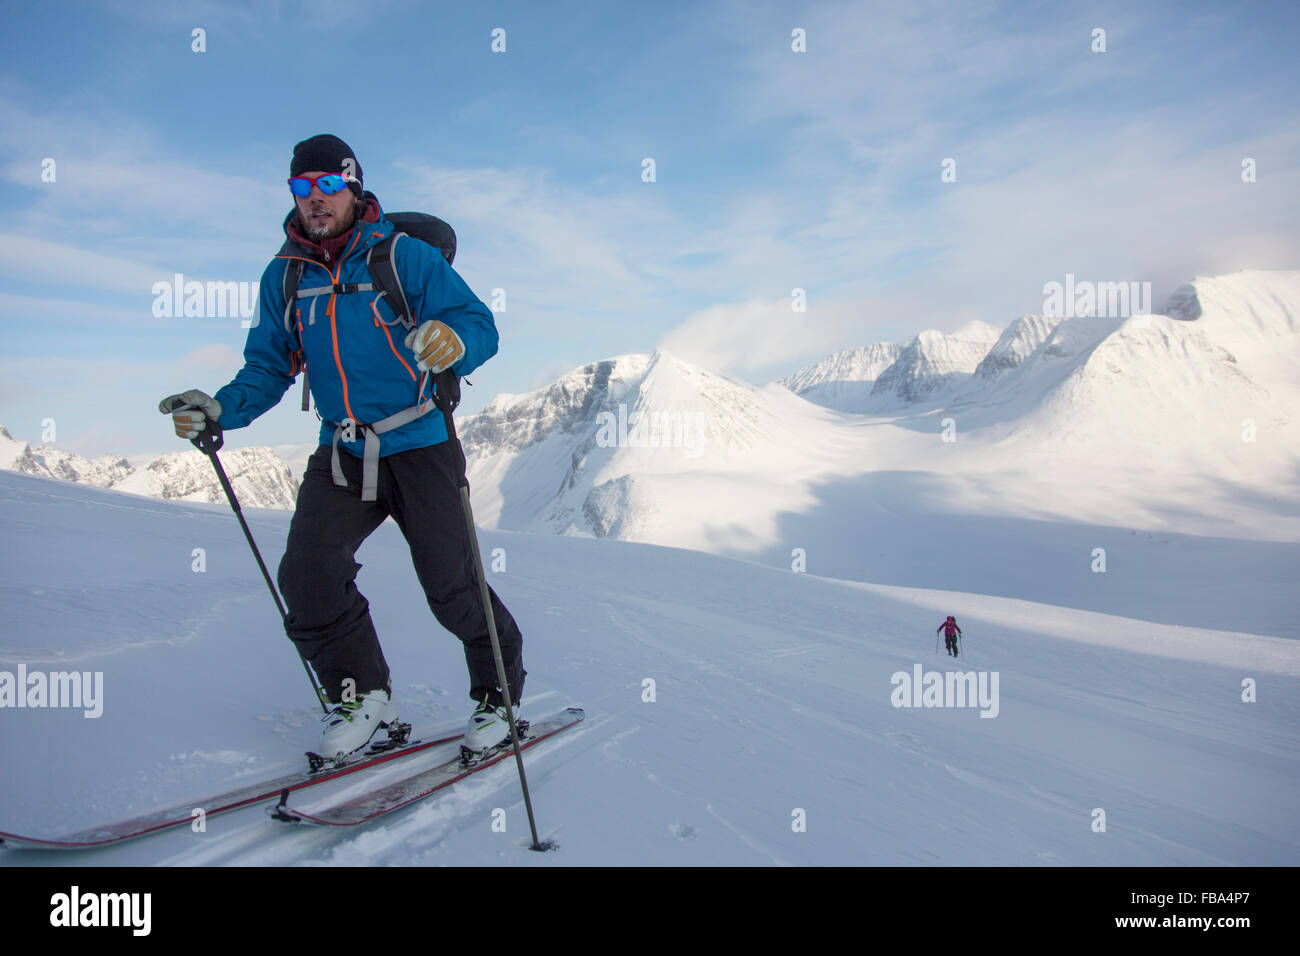 Sweden, Lapland, Ski mountaineering in mountains Stock Photo